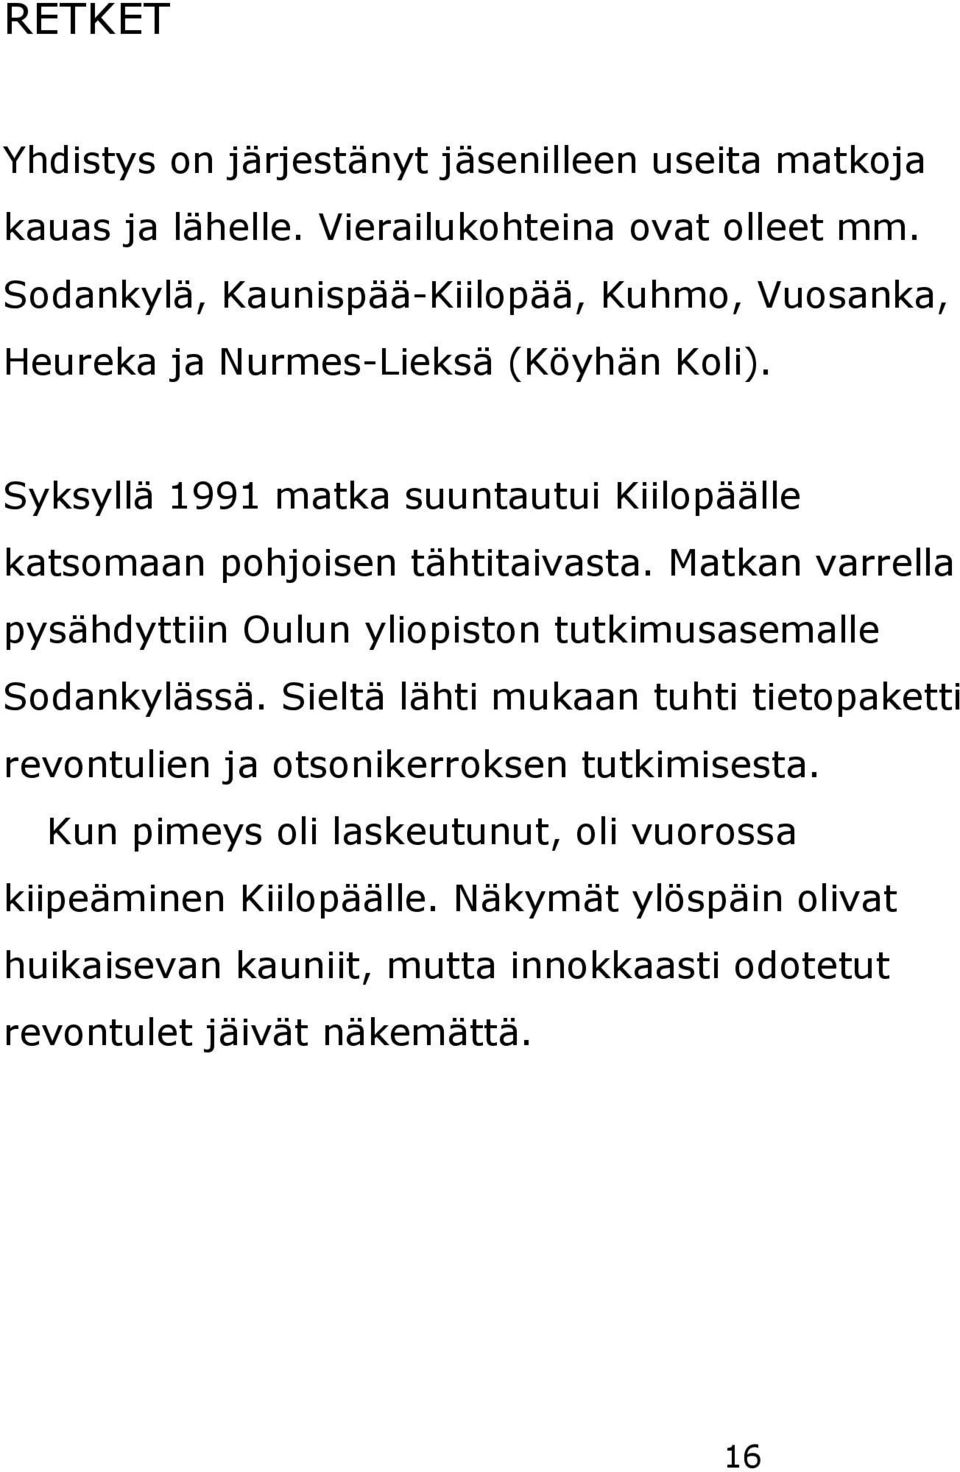 Syksyllä 1991 matka suuntautui Kiilopäälle katsomaan pohjoisen tähtitaivasta.